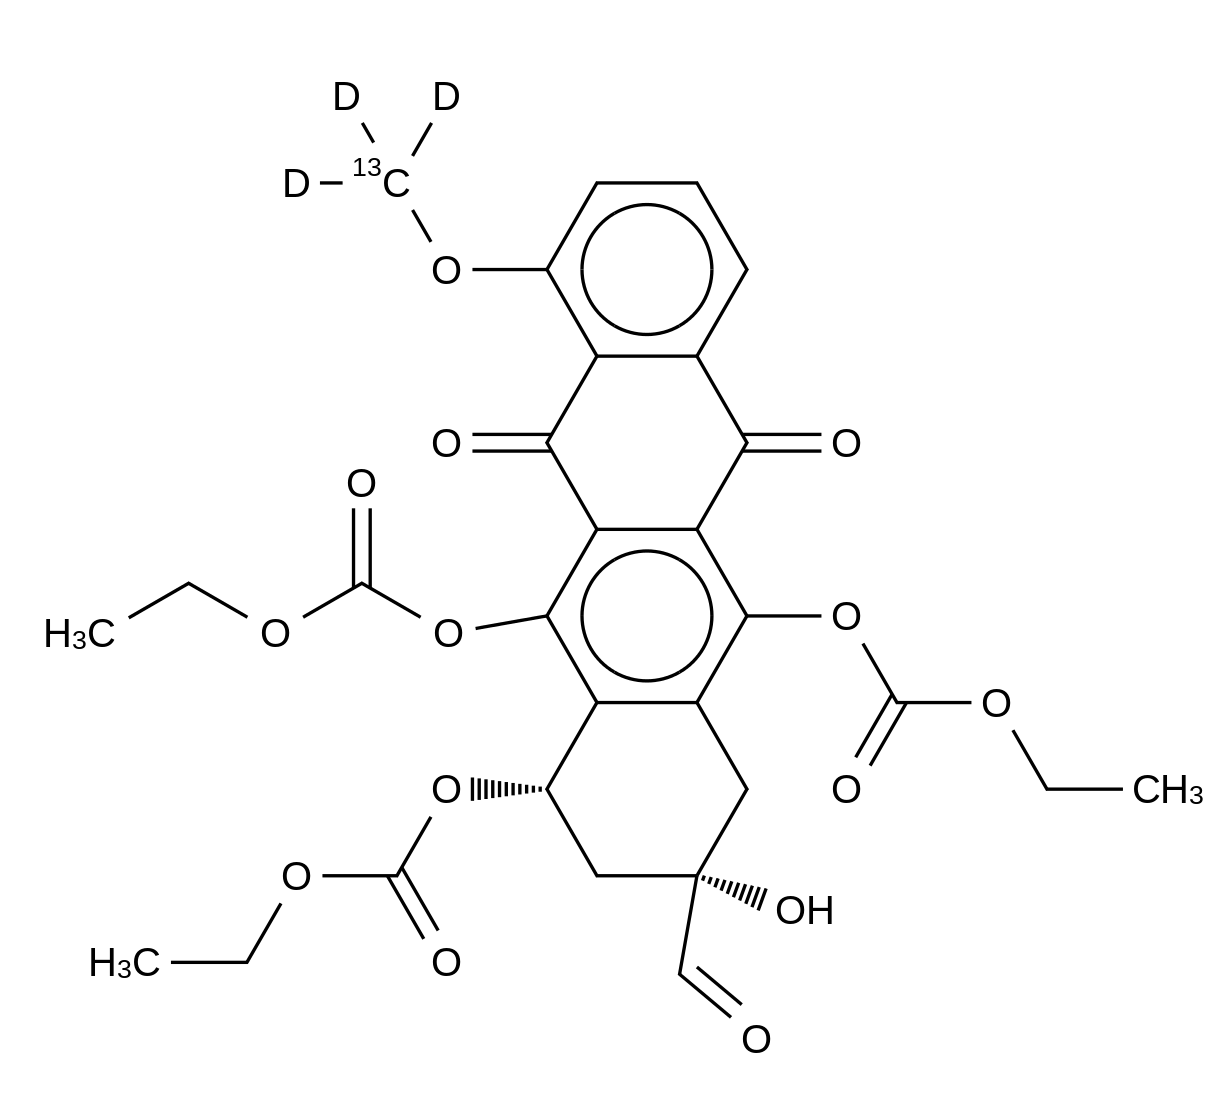 6,10,11-Triethylcarbonate Daunomycinone-13CD3 8-Formaldehyde